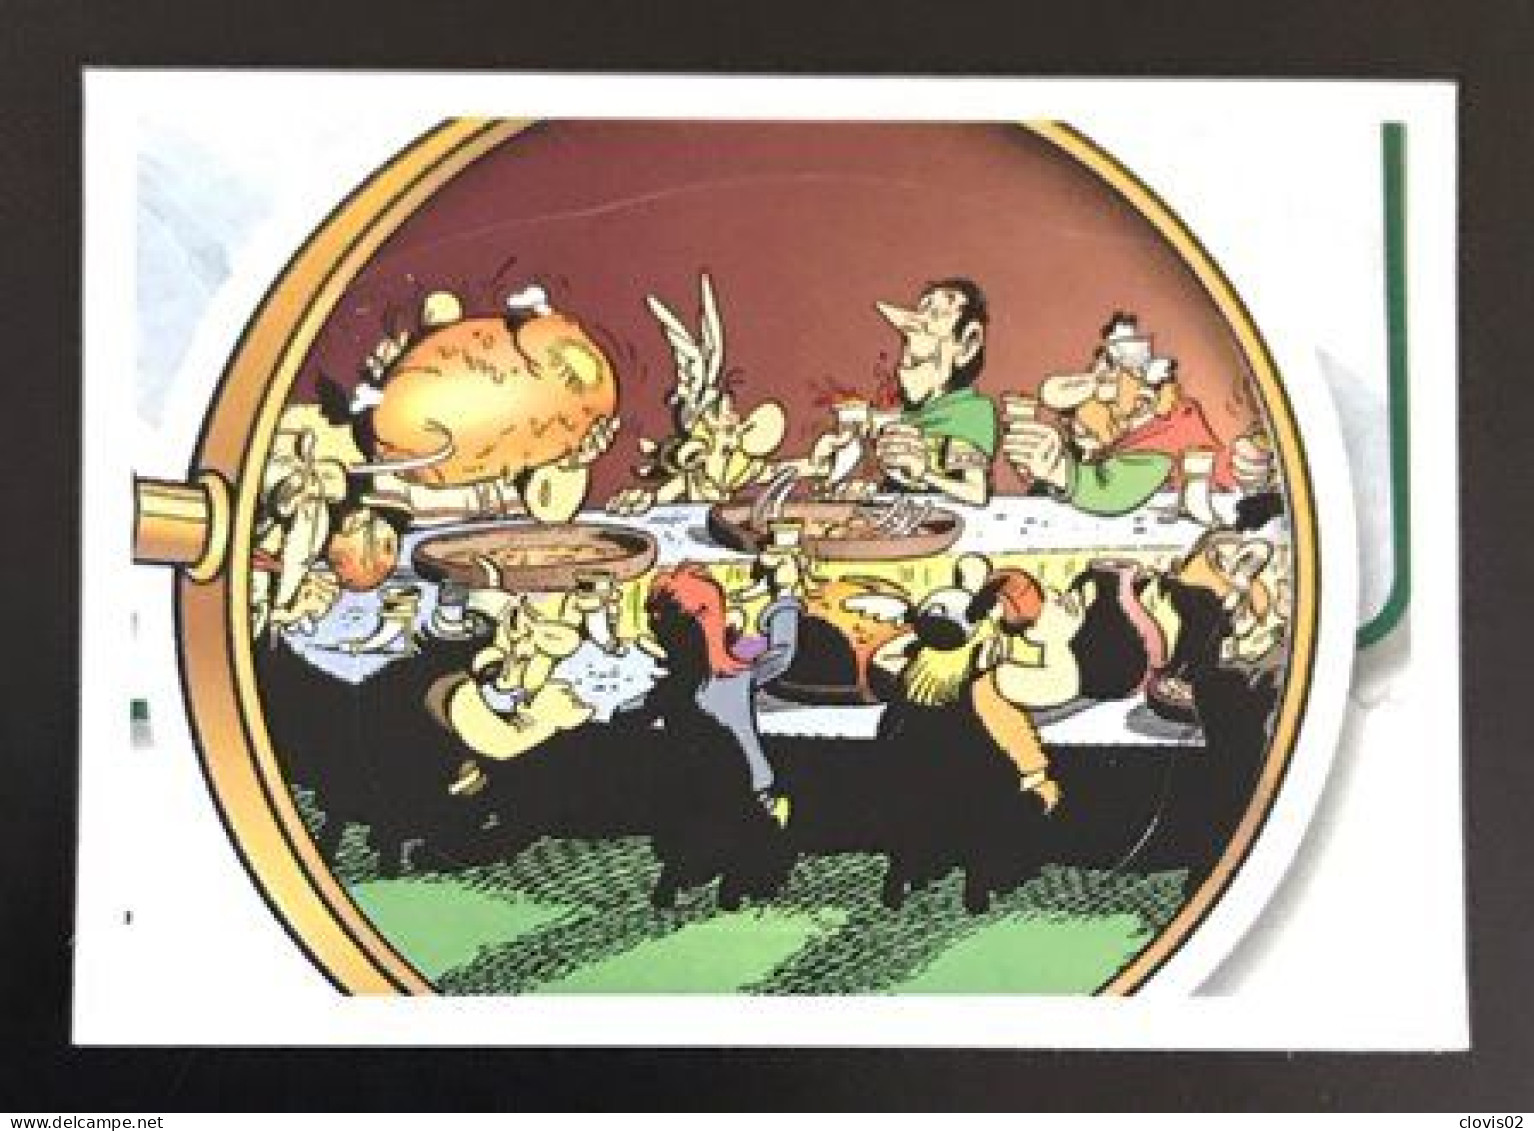 73 - PANINI Family Astérix 60 Ans D'aventures - Carrefour Sticker Vignette - Französische Ausgabe